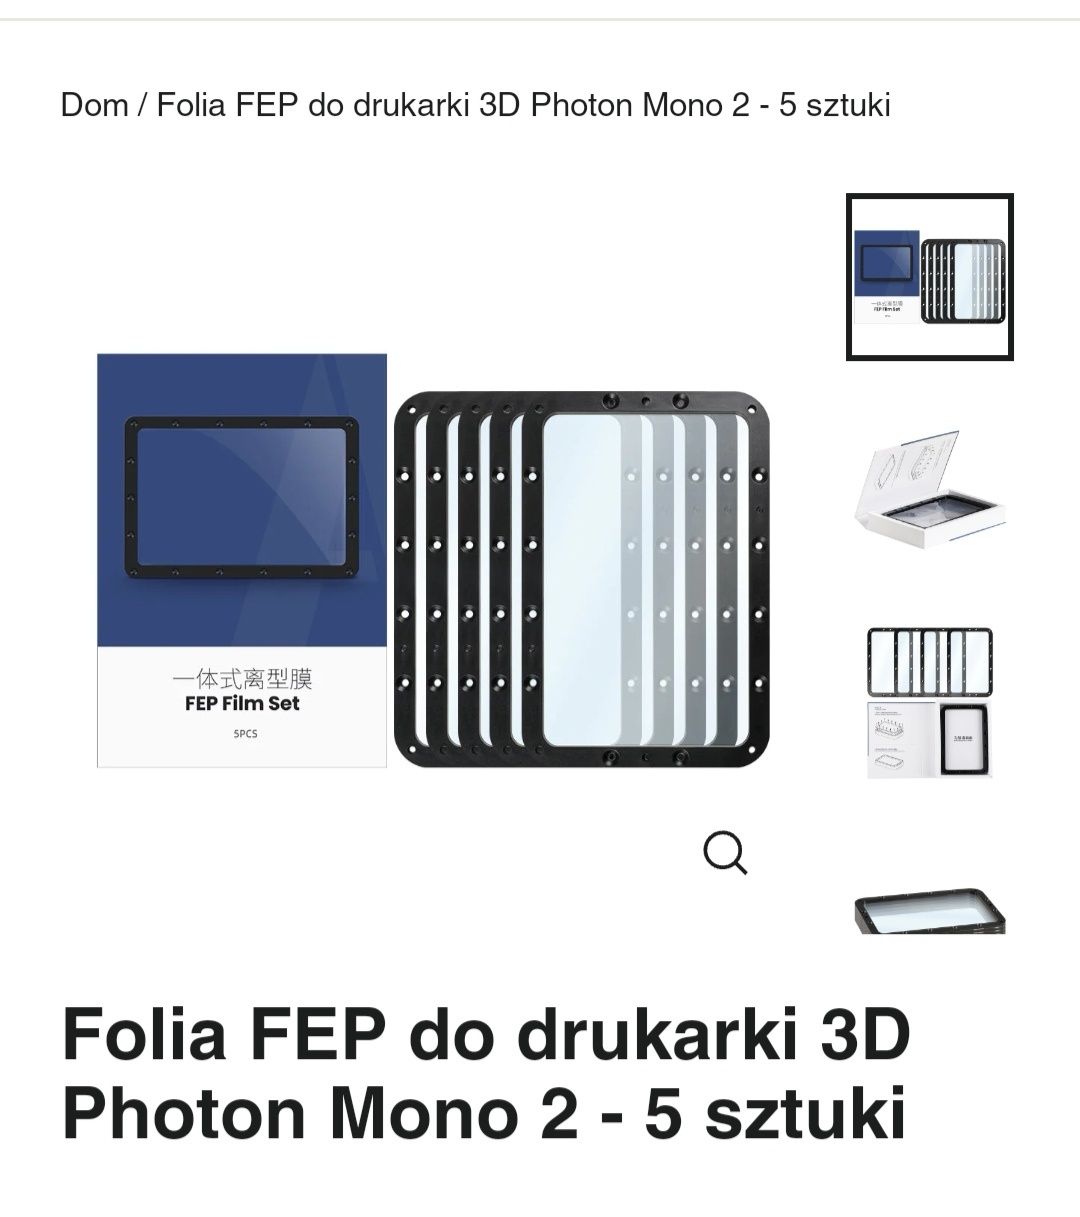 Folia FEP do drukarki 3D szt 5